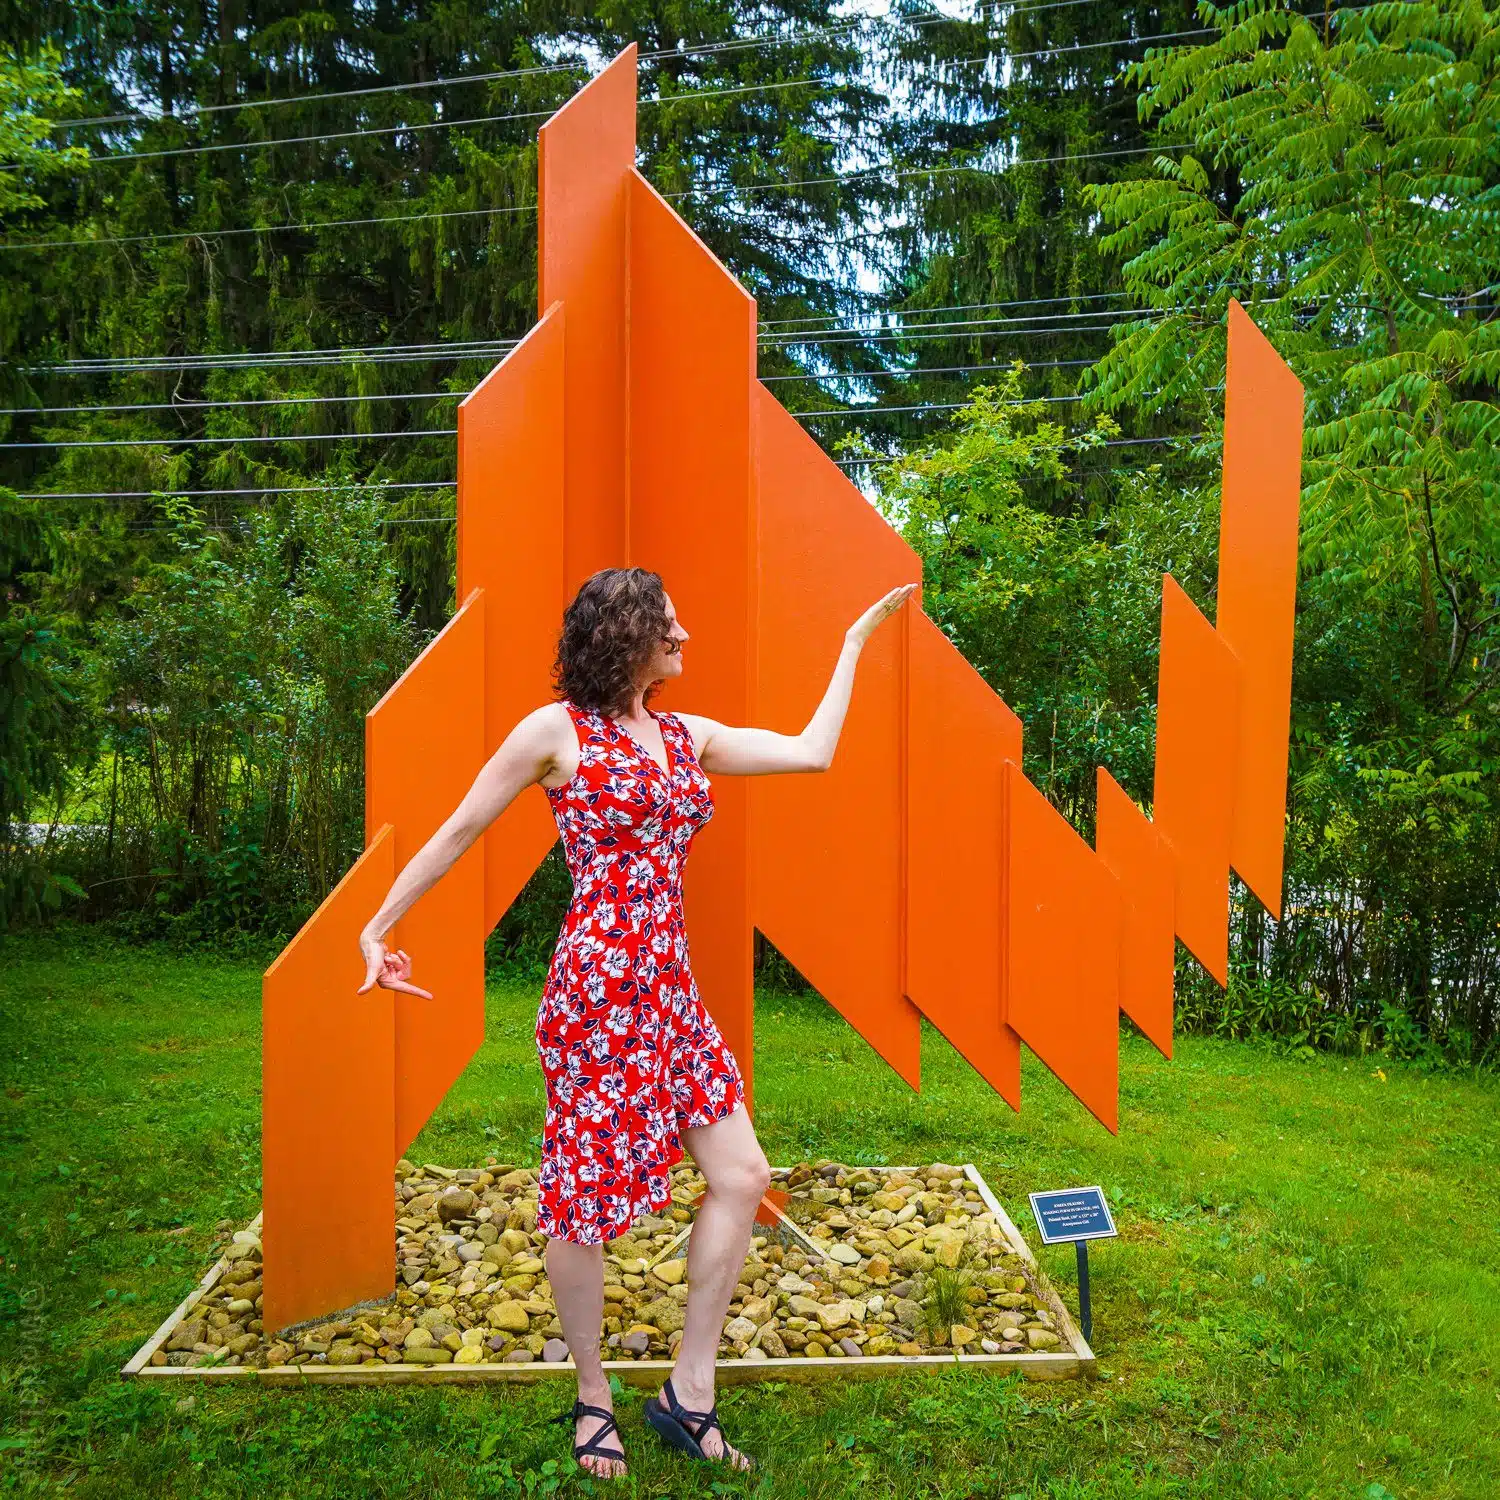 Orange sculpture matching pose